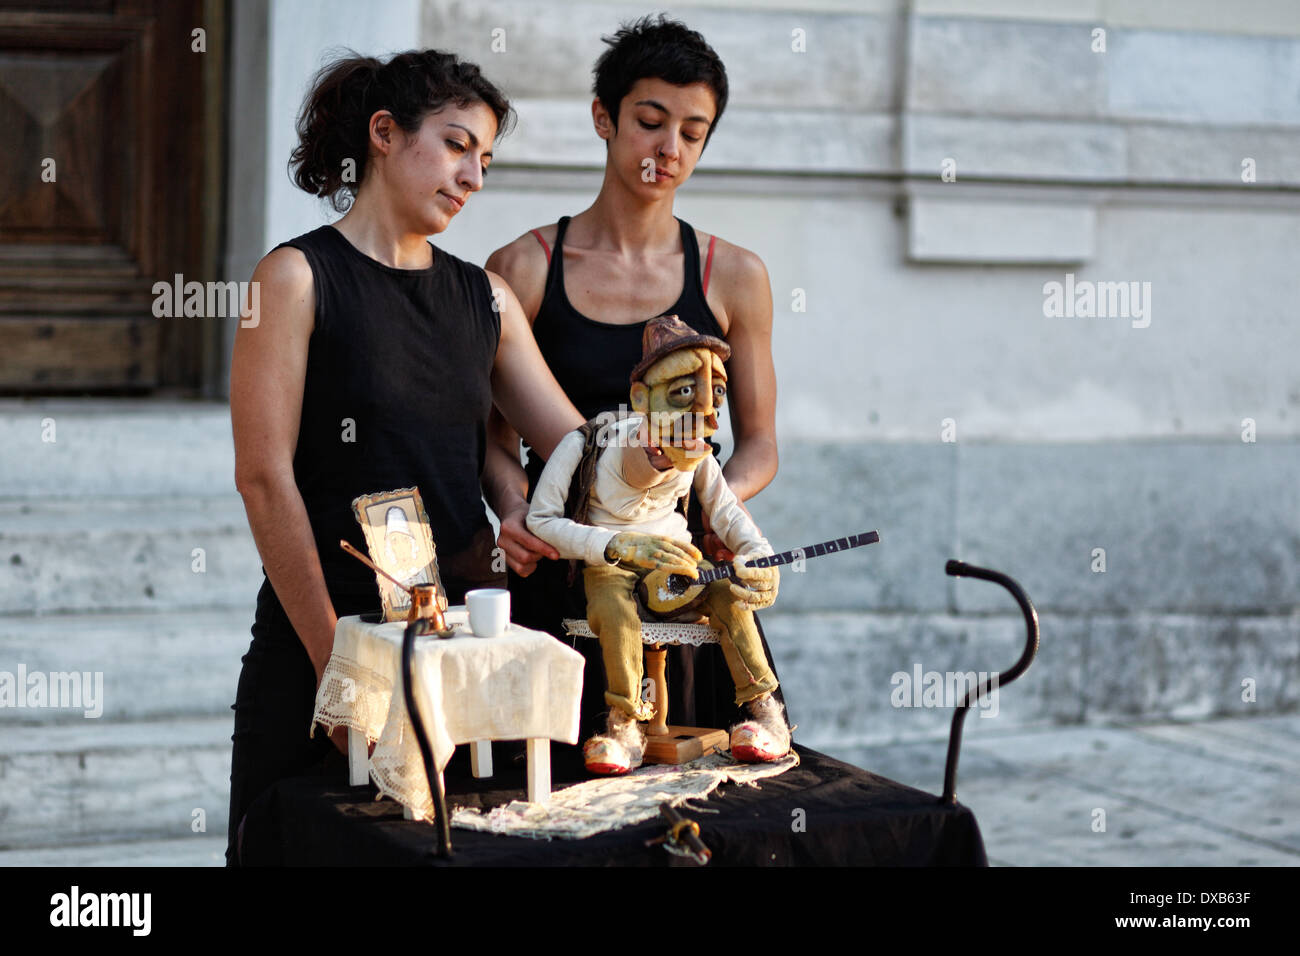 Le prestazioni delle marionette in strada di Atene, Grecia Foto Stock